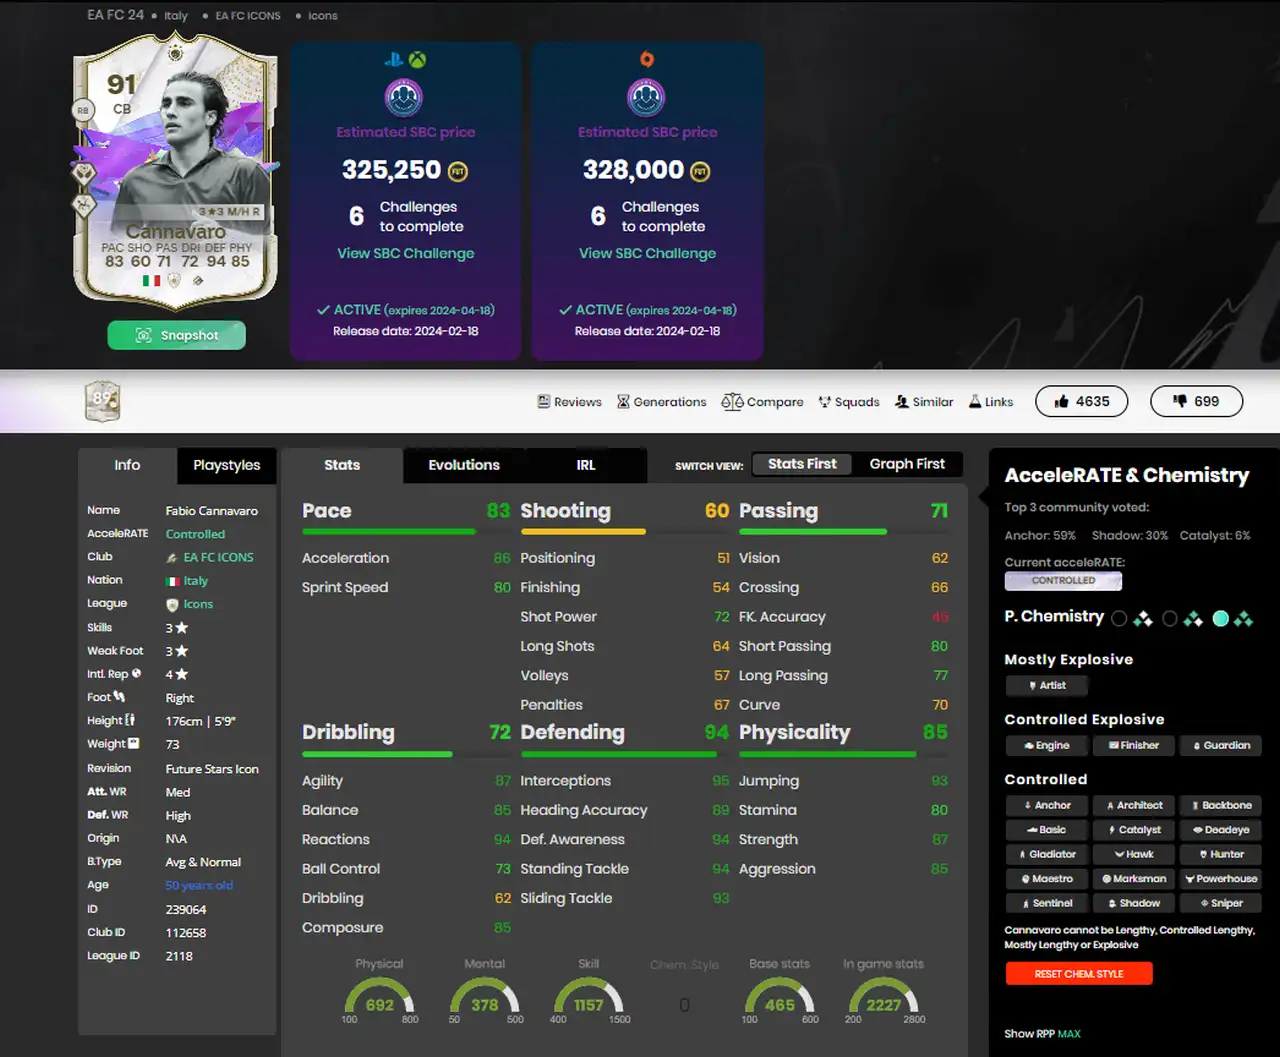 EA FC 24 Ultimate Team: come ottenere Fabio Cannavaro Icona Future Stars 91 - soluzioni SBC